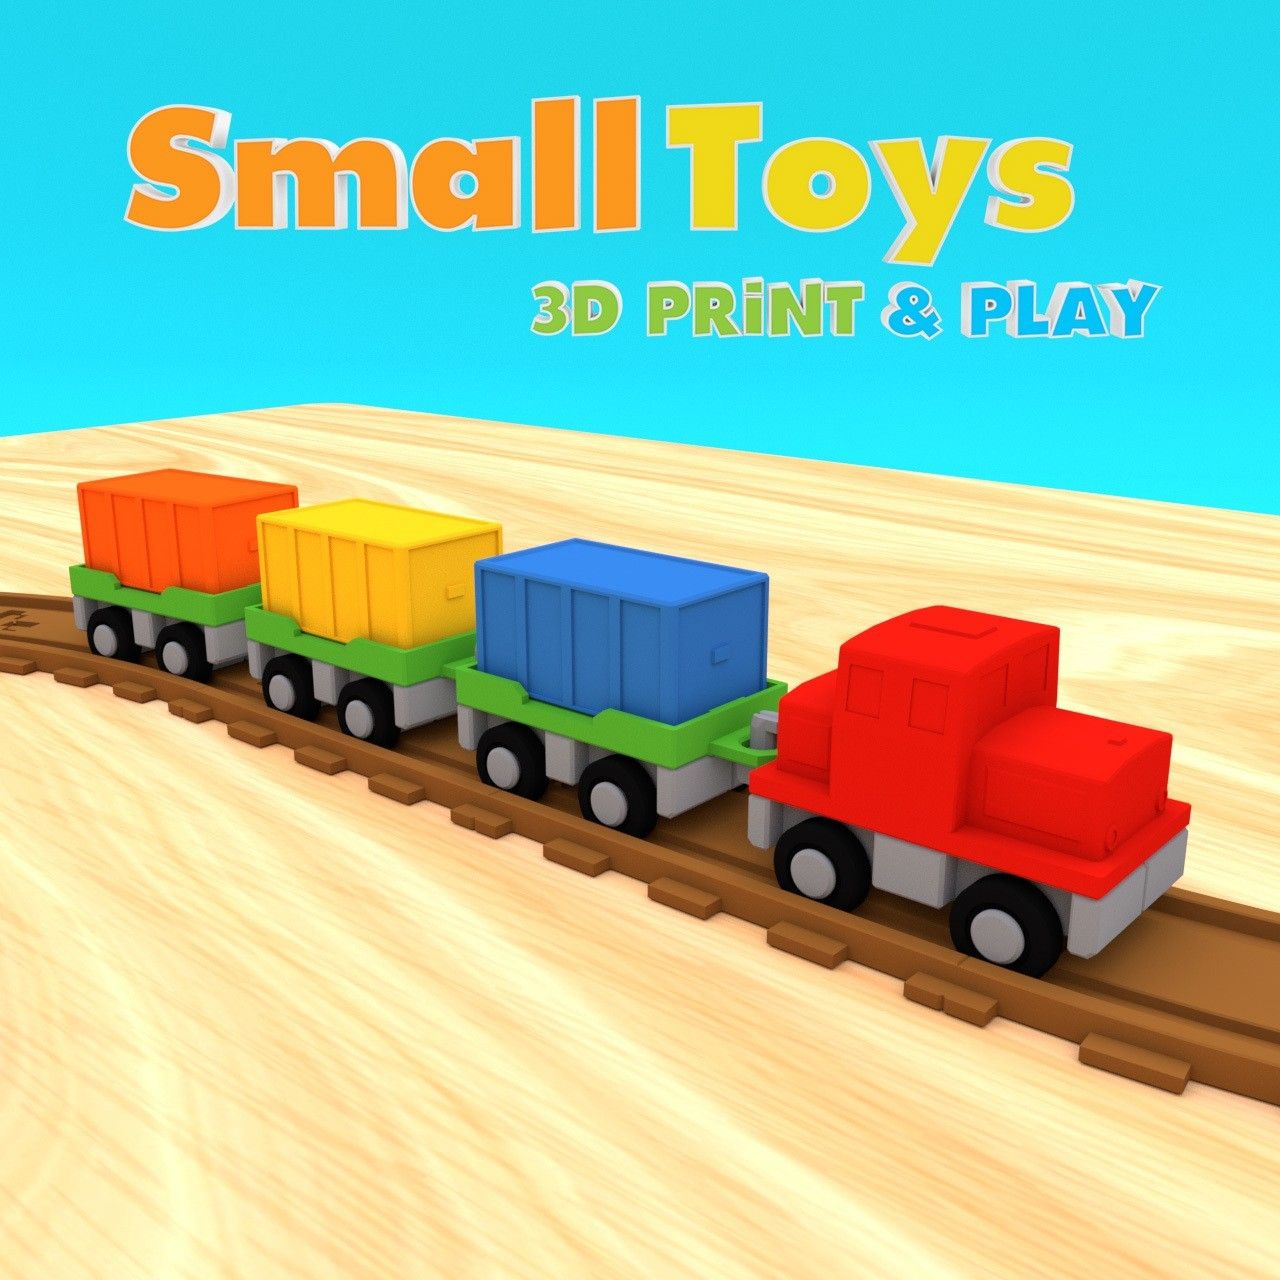 smalltoys-freight-train01.jpg Download STL file SmallToys - Starter Pack • Design to 3D print, Olivier3DStudio